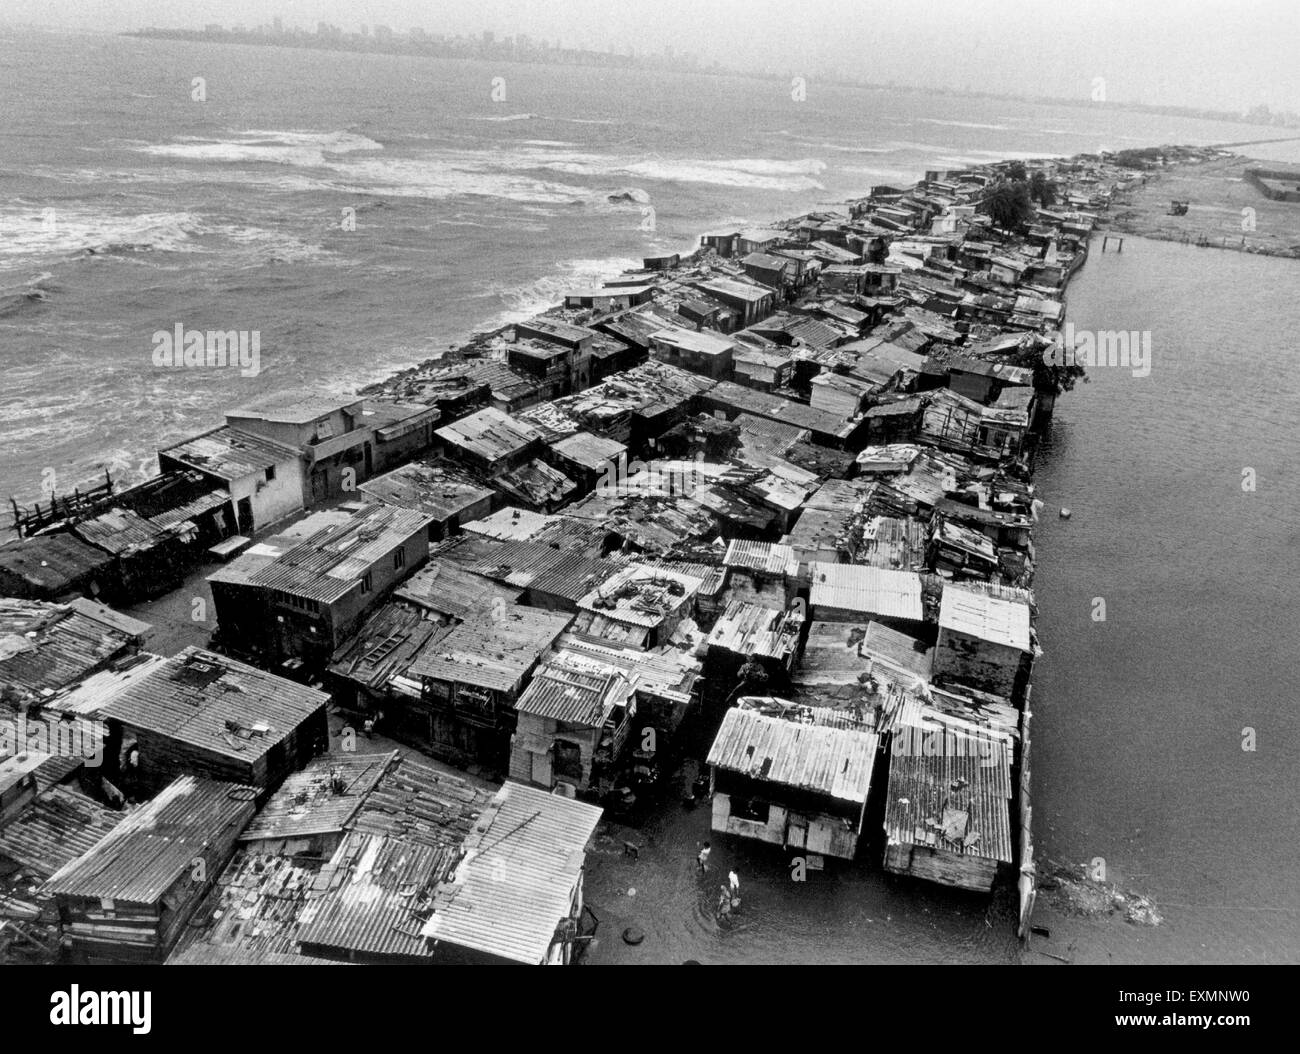 slums near sea bombay mumbai maharashtra india asia Stock Photo